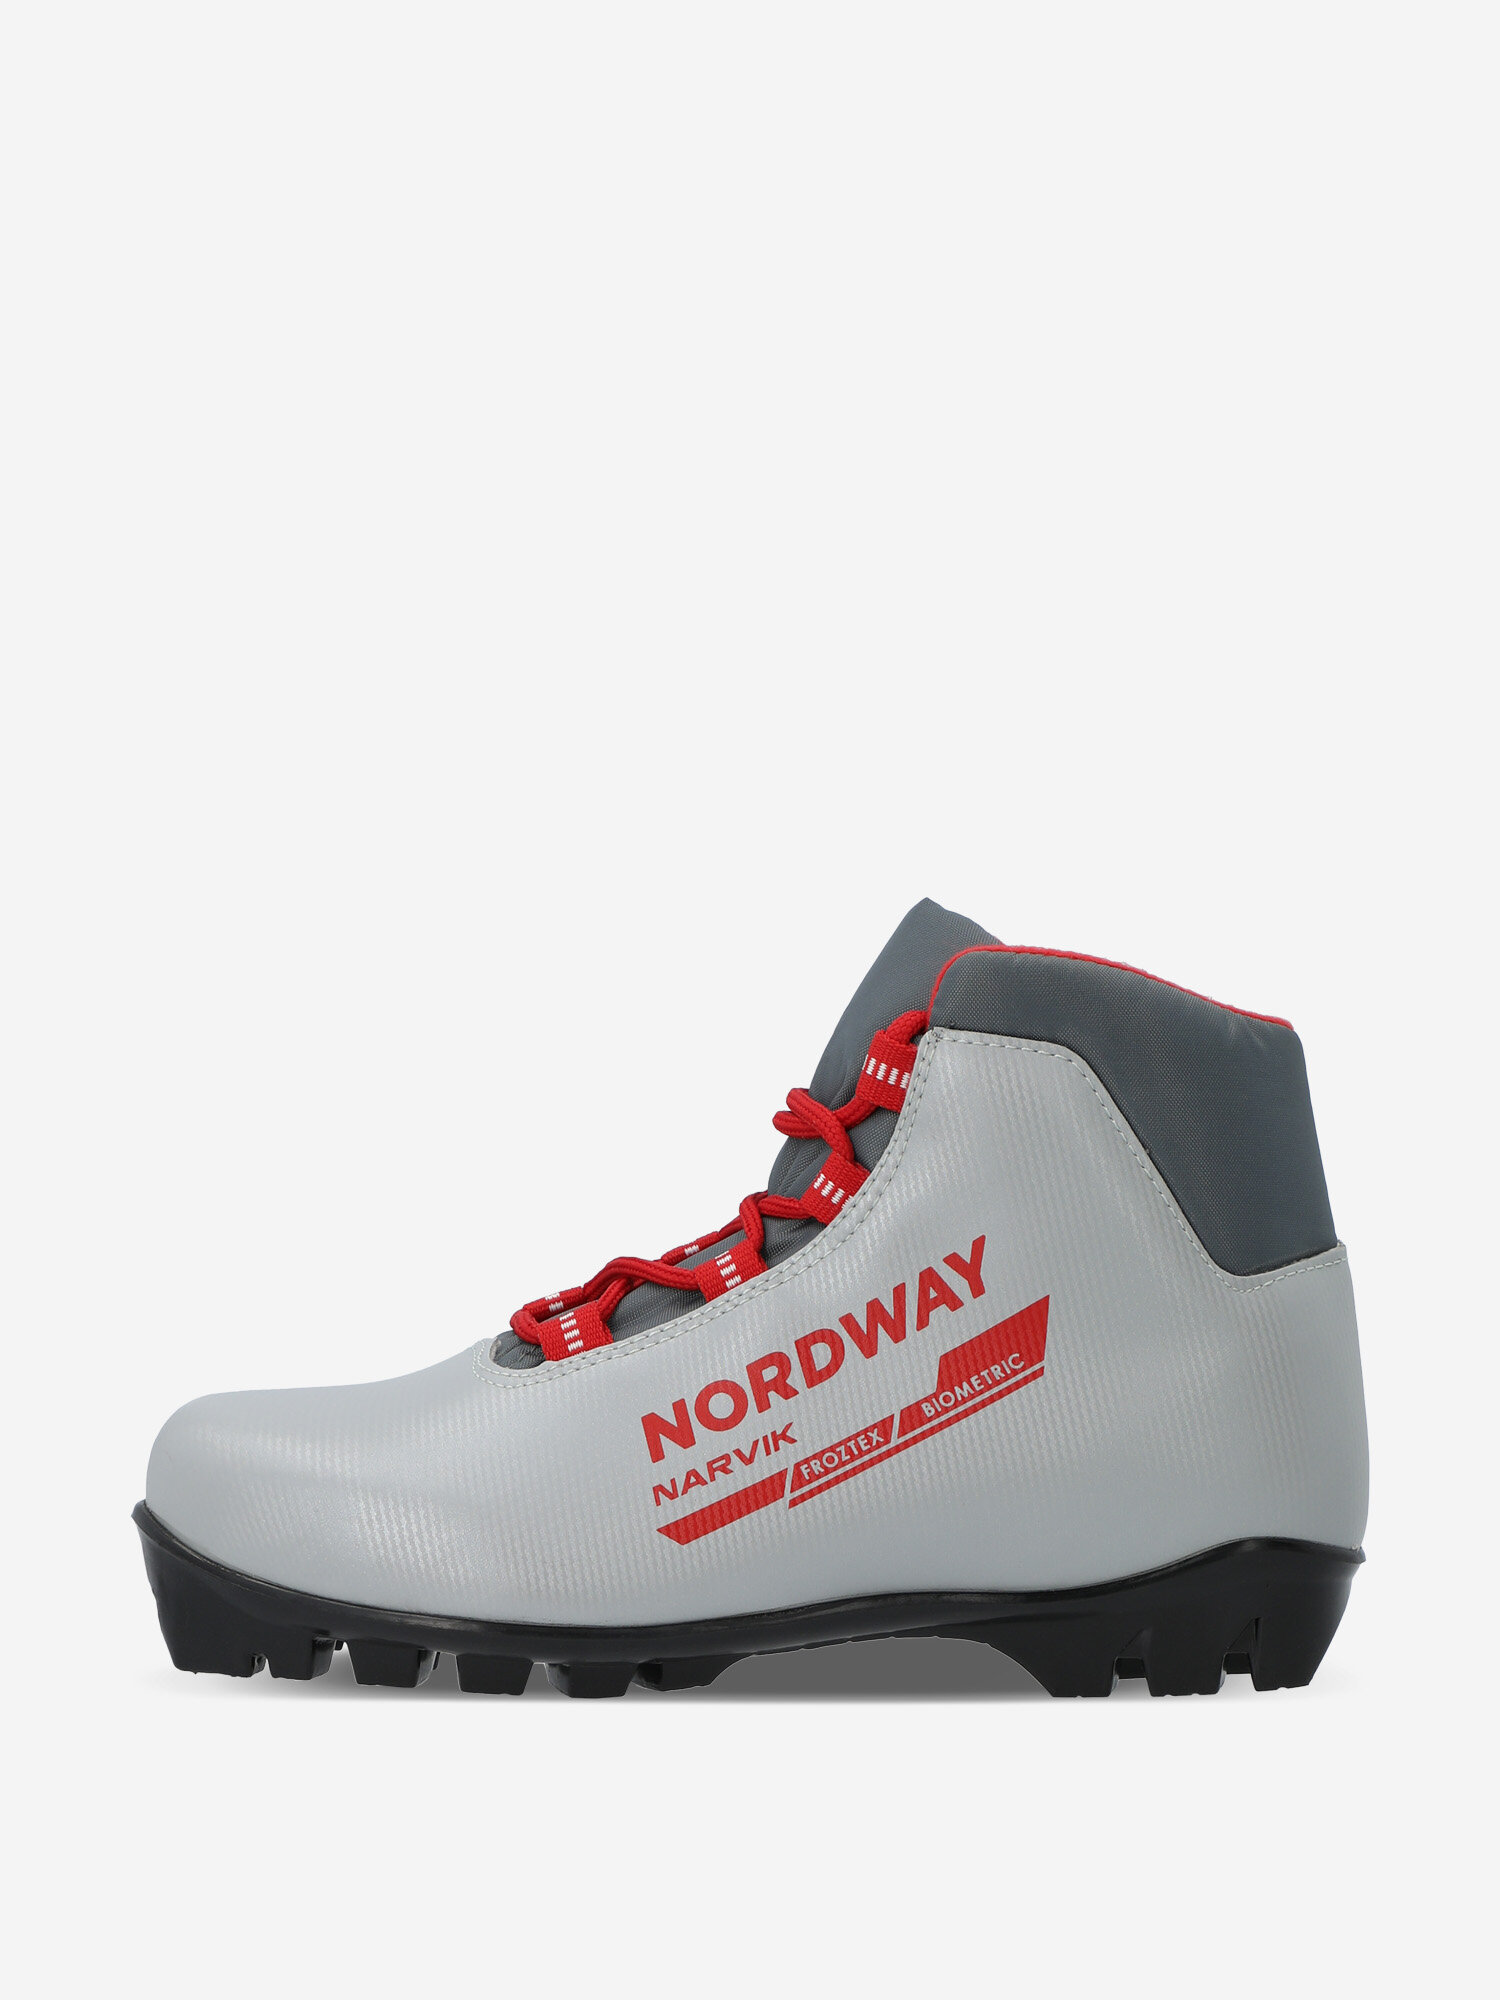 Ботинки для беговых лыж детские Nordway Narvik NNN Красный; RUS: 31, Ориг: 31